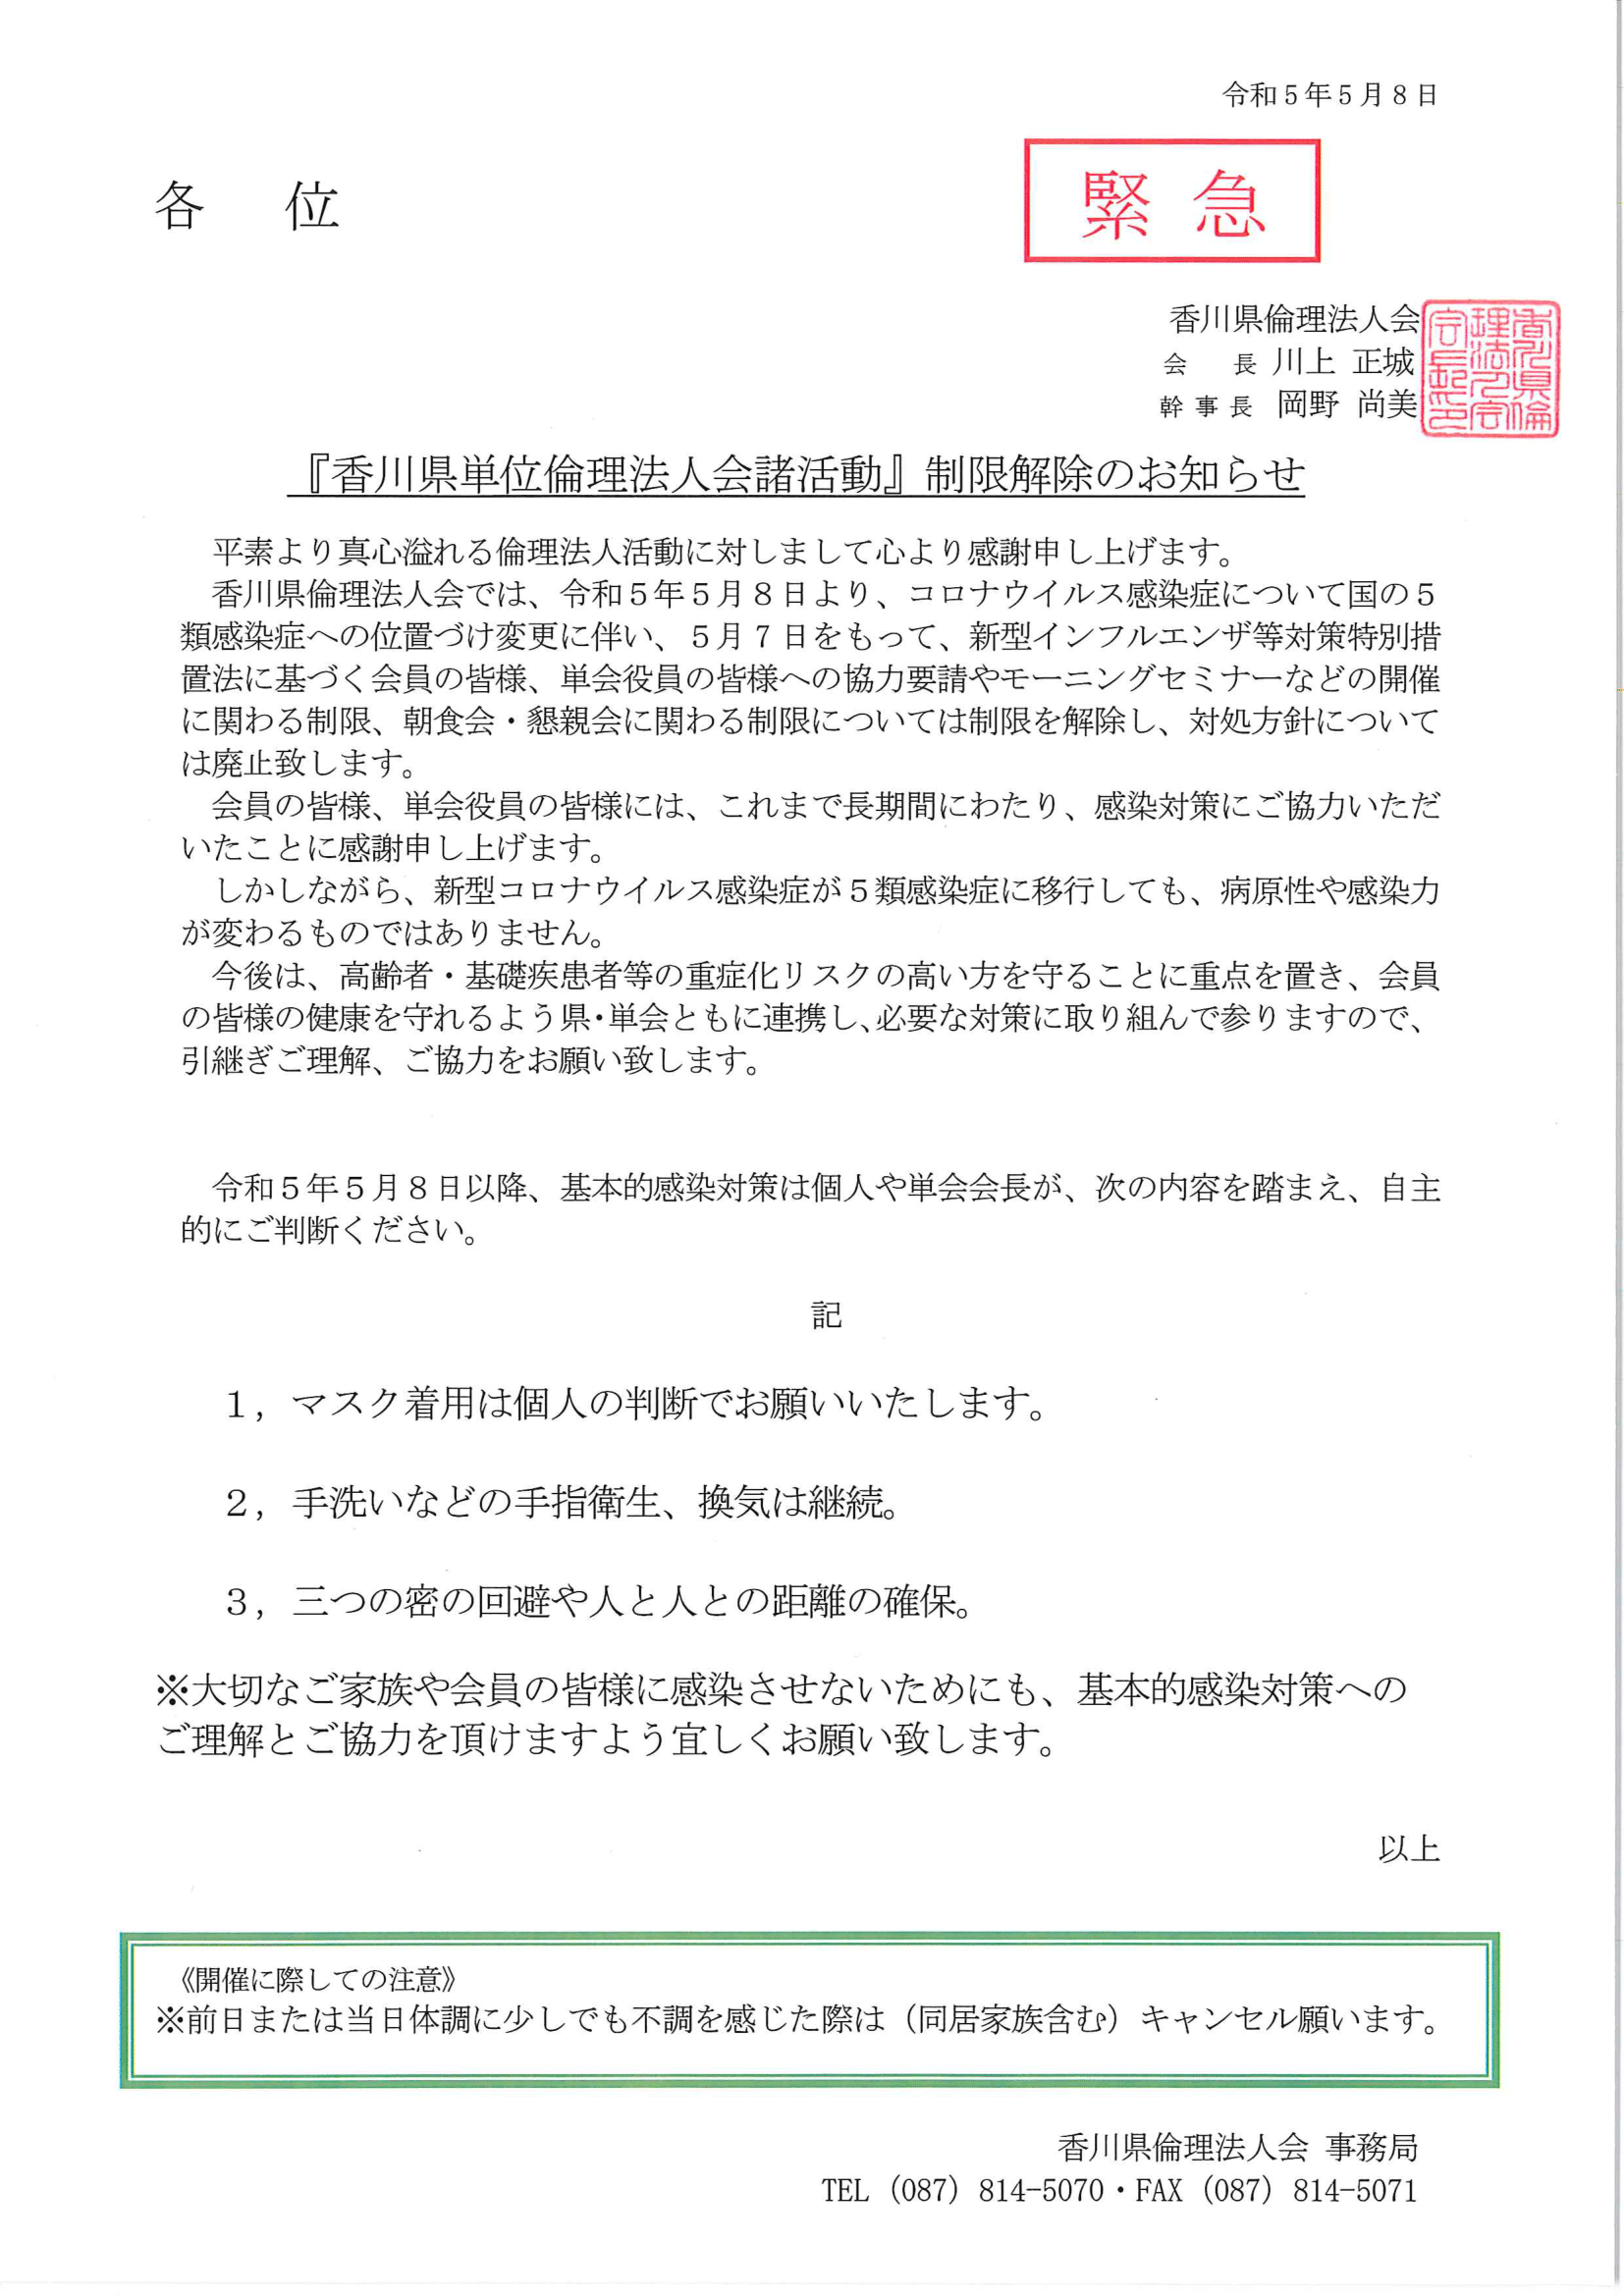 香川県単位倫理法人会諸活動」制限解除のお知らせ